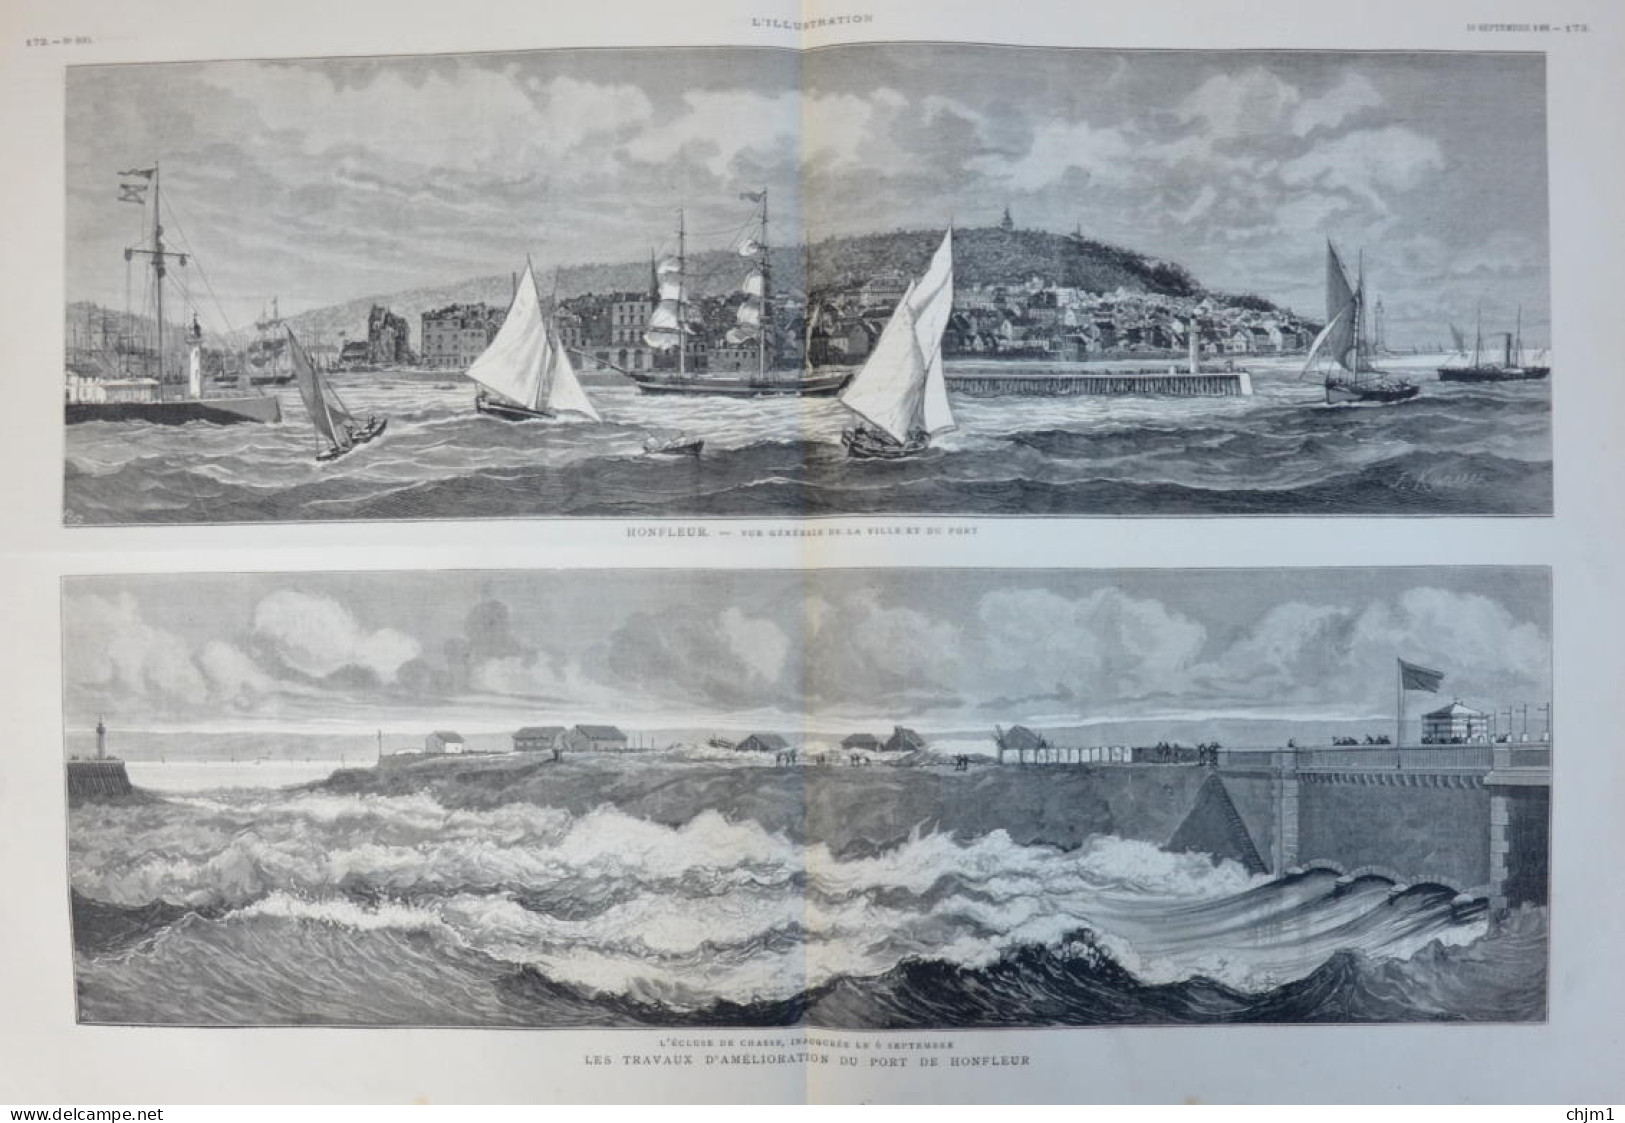 Honfleur - Les Traveaux D'amélioration U Port De Honfleur - Page Originale Double 1881 - Historische Dokumente